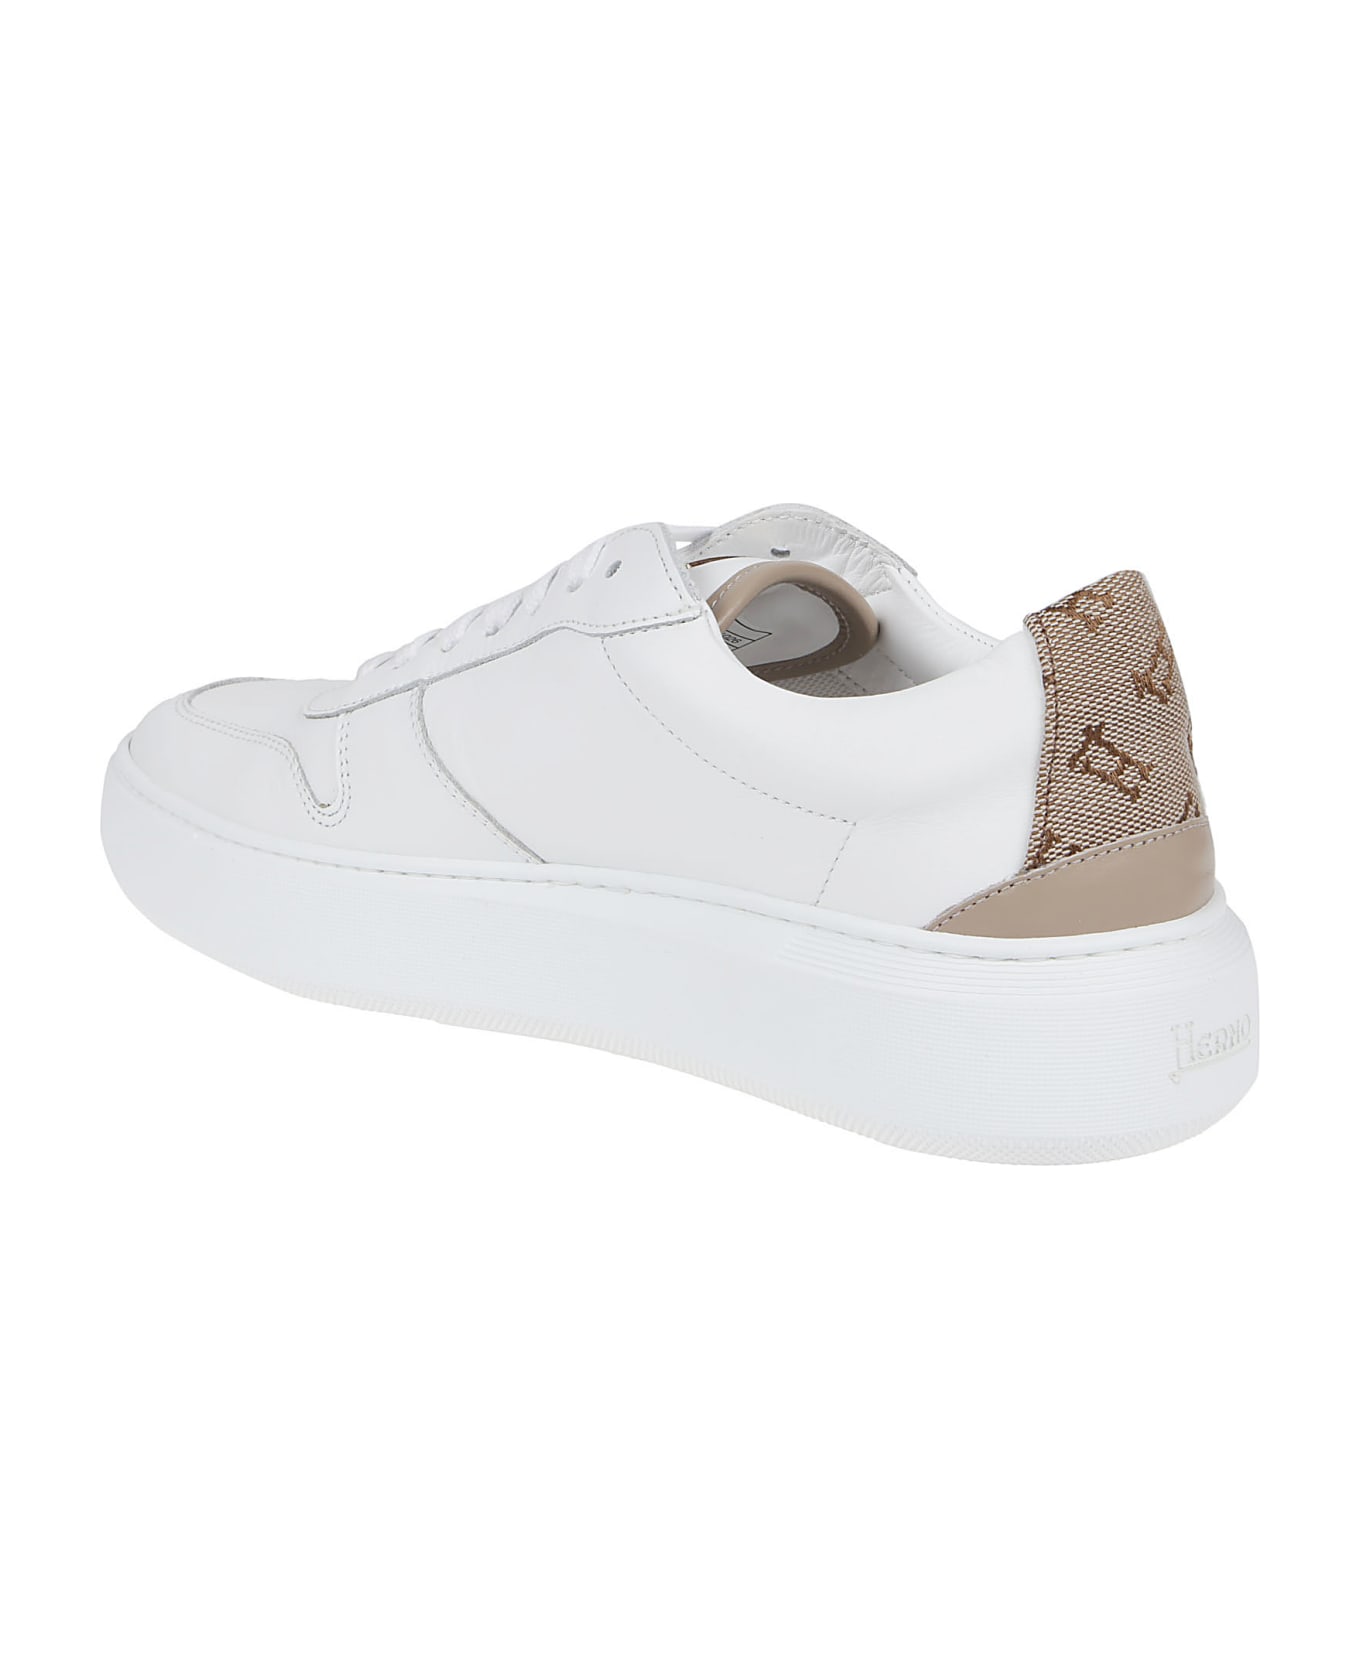 Herno Sneakers White - White